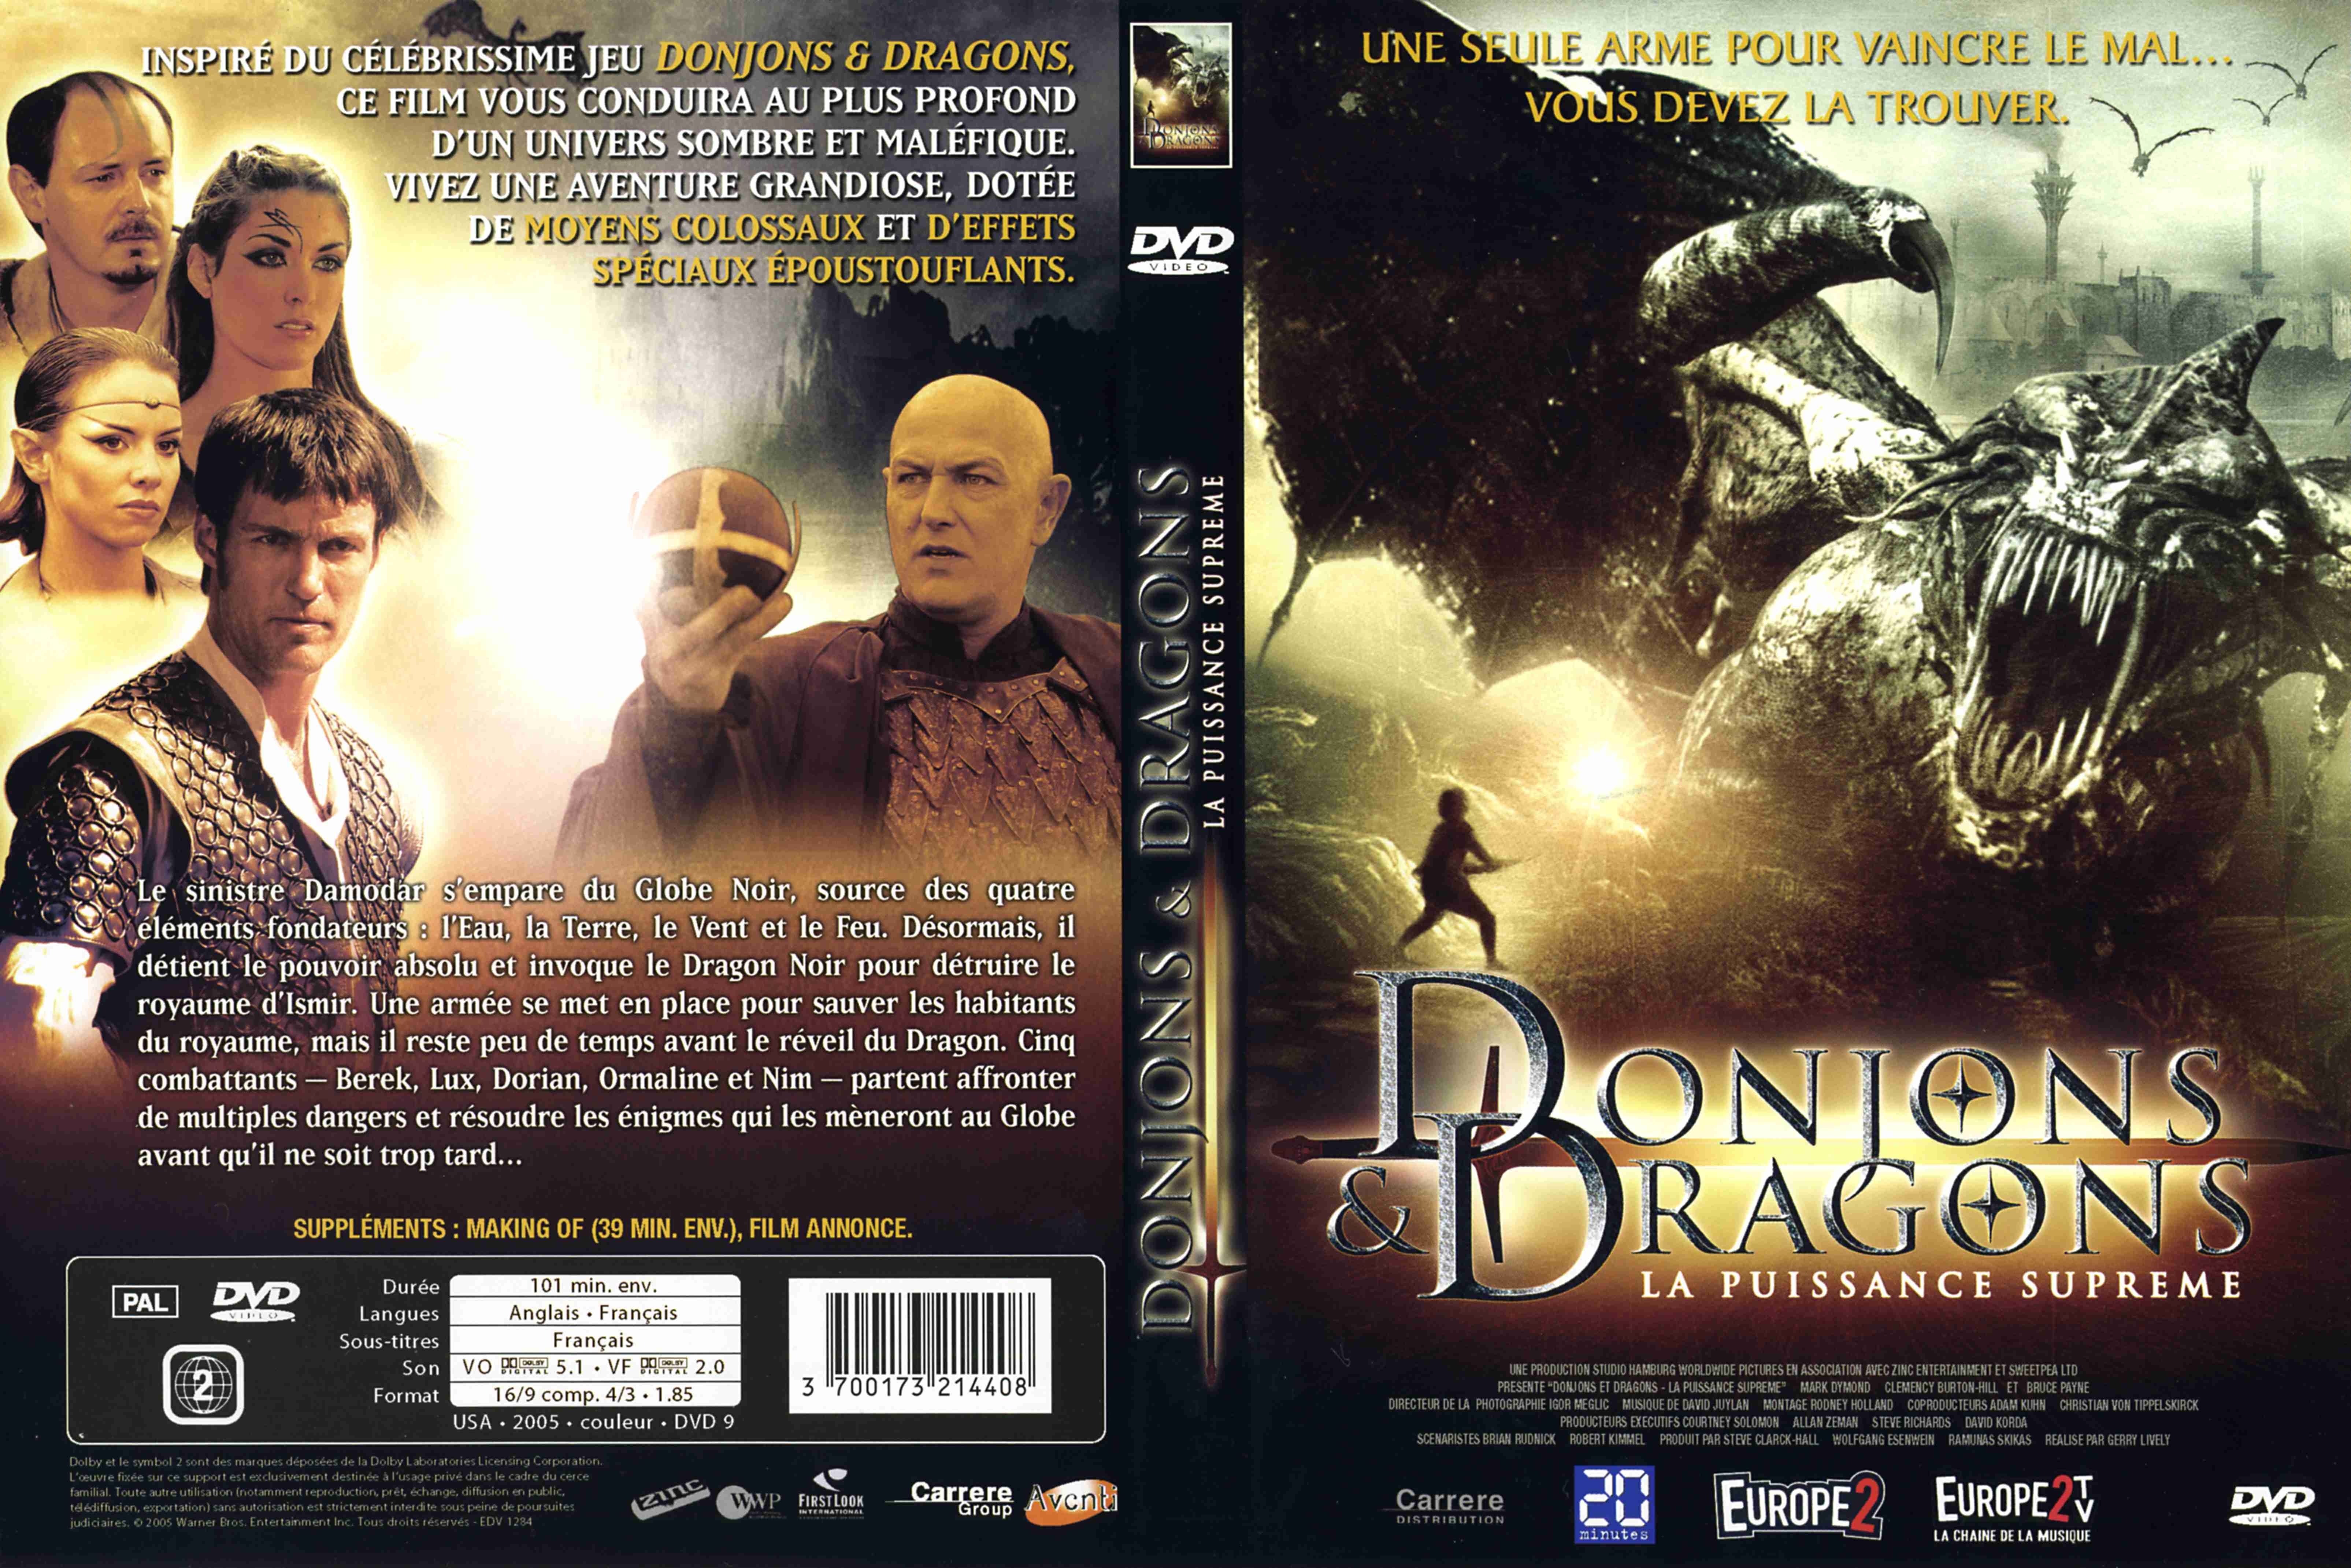 Jaquette DVD Donjons et dragons 2 v2